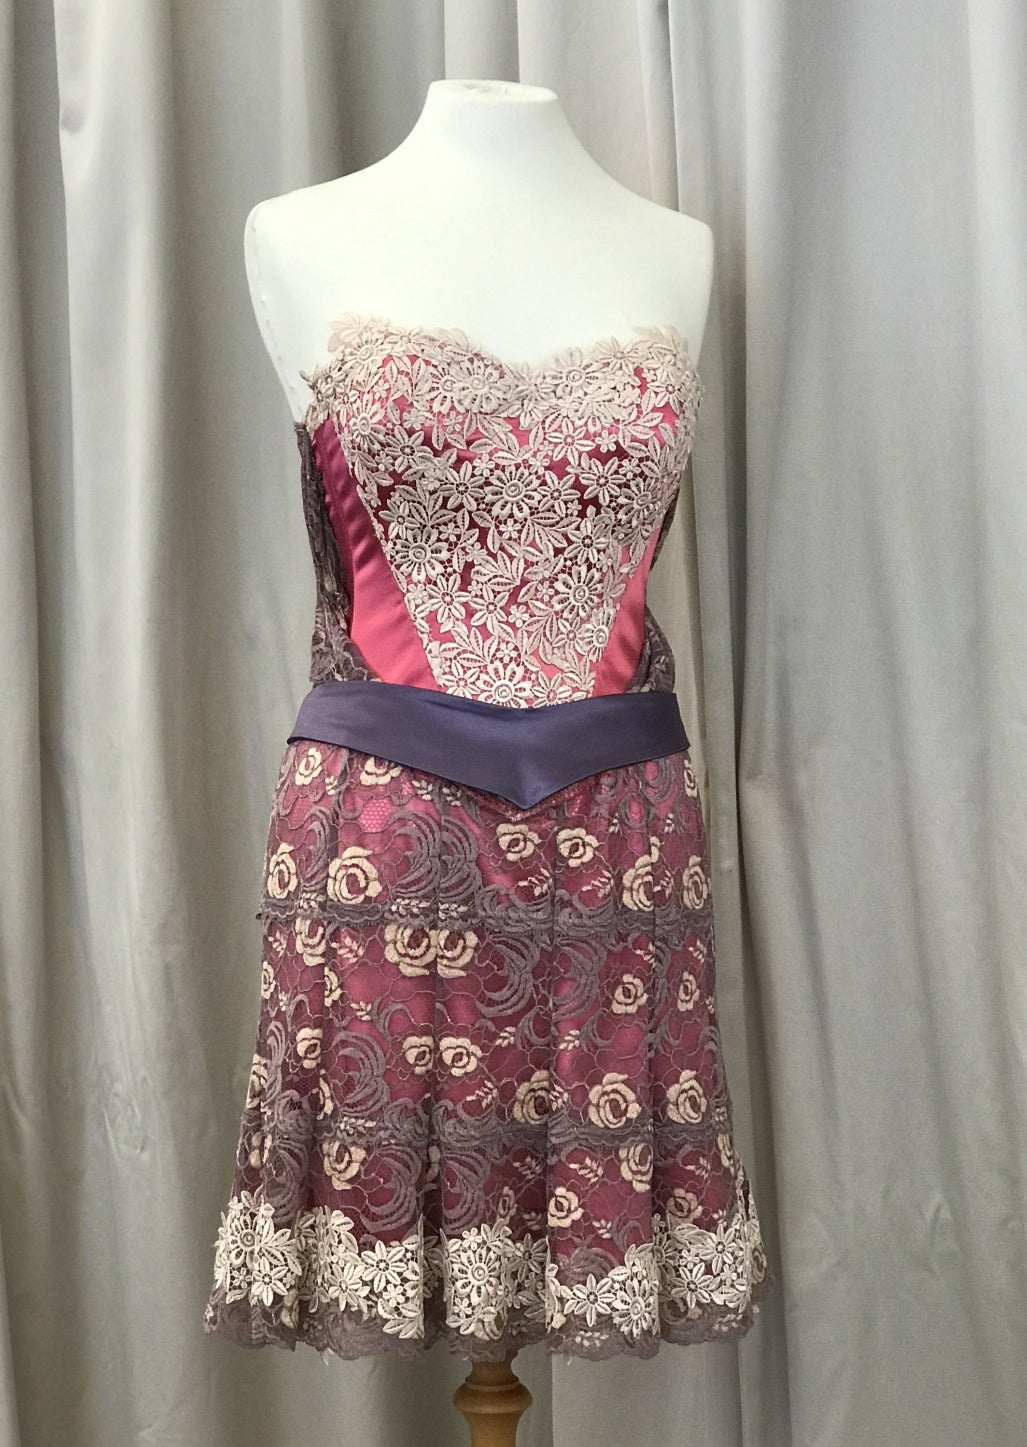 Antique Rose Corsetiere Lace Dress